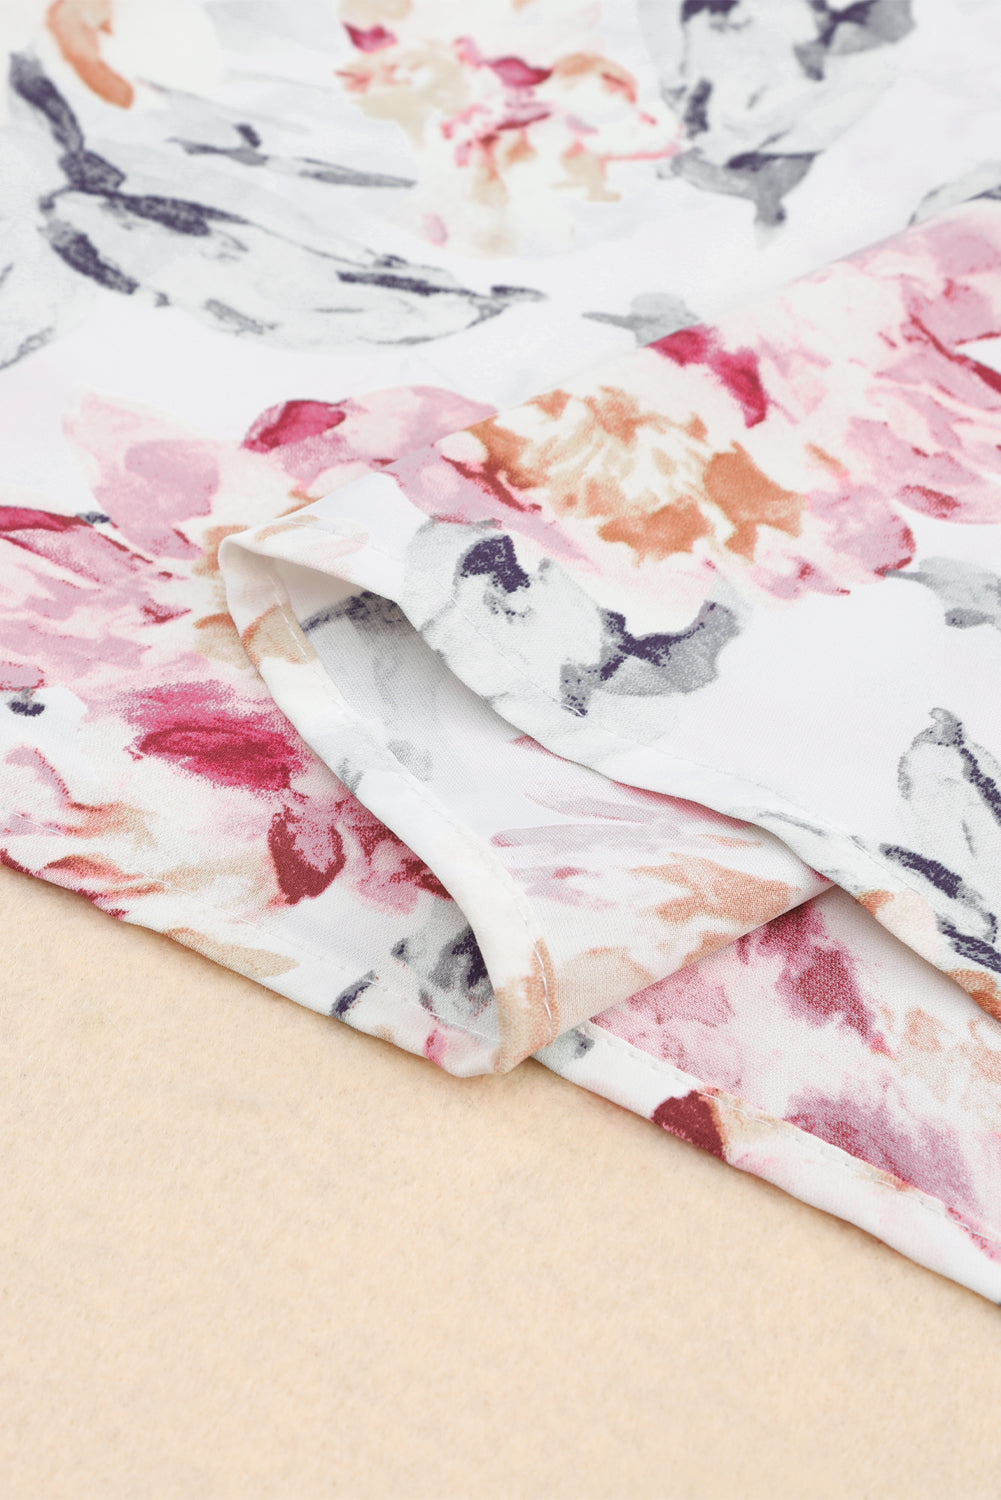 Rožnata bluza brez rokavov s prepleteno čipko s cvetličnim vzorcem